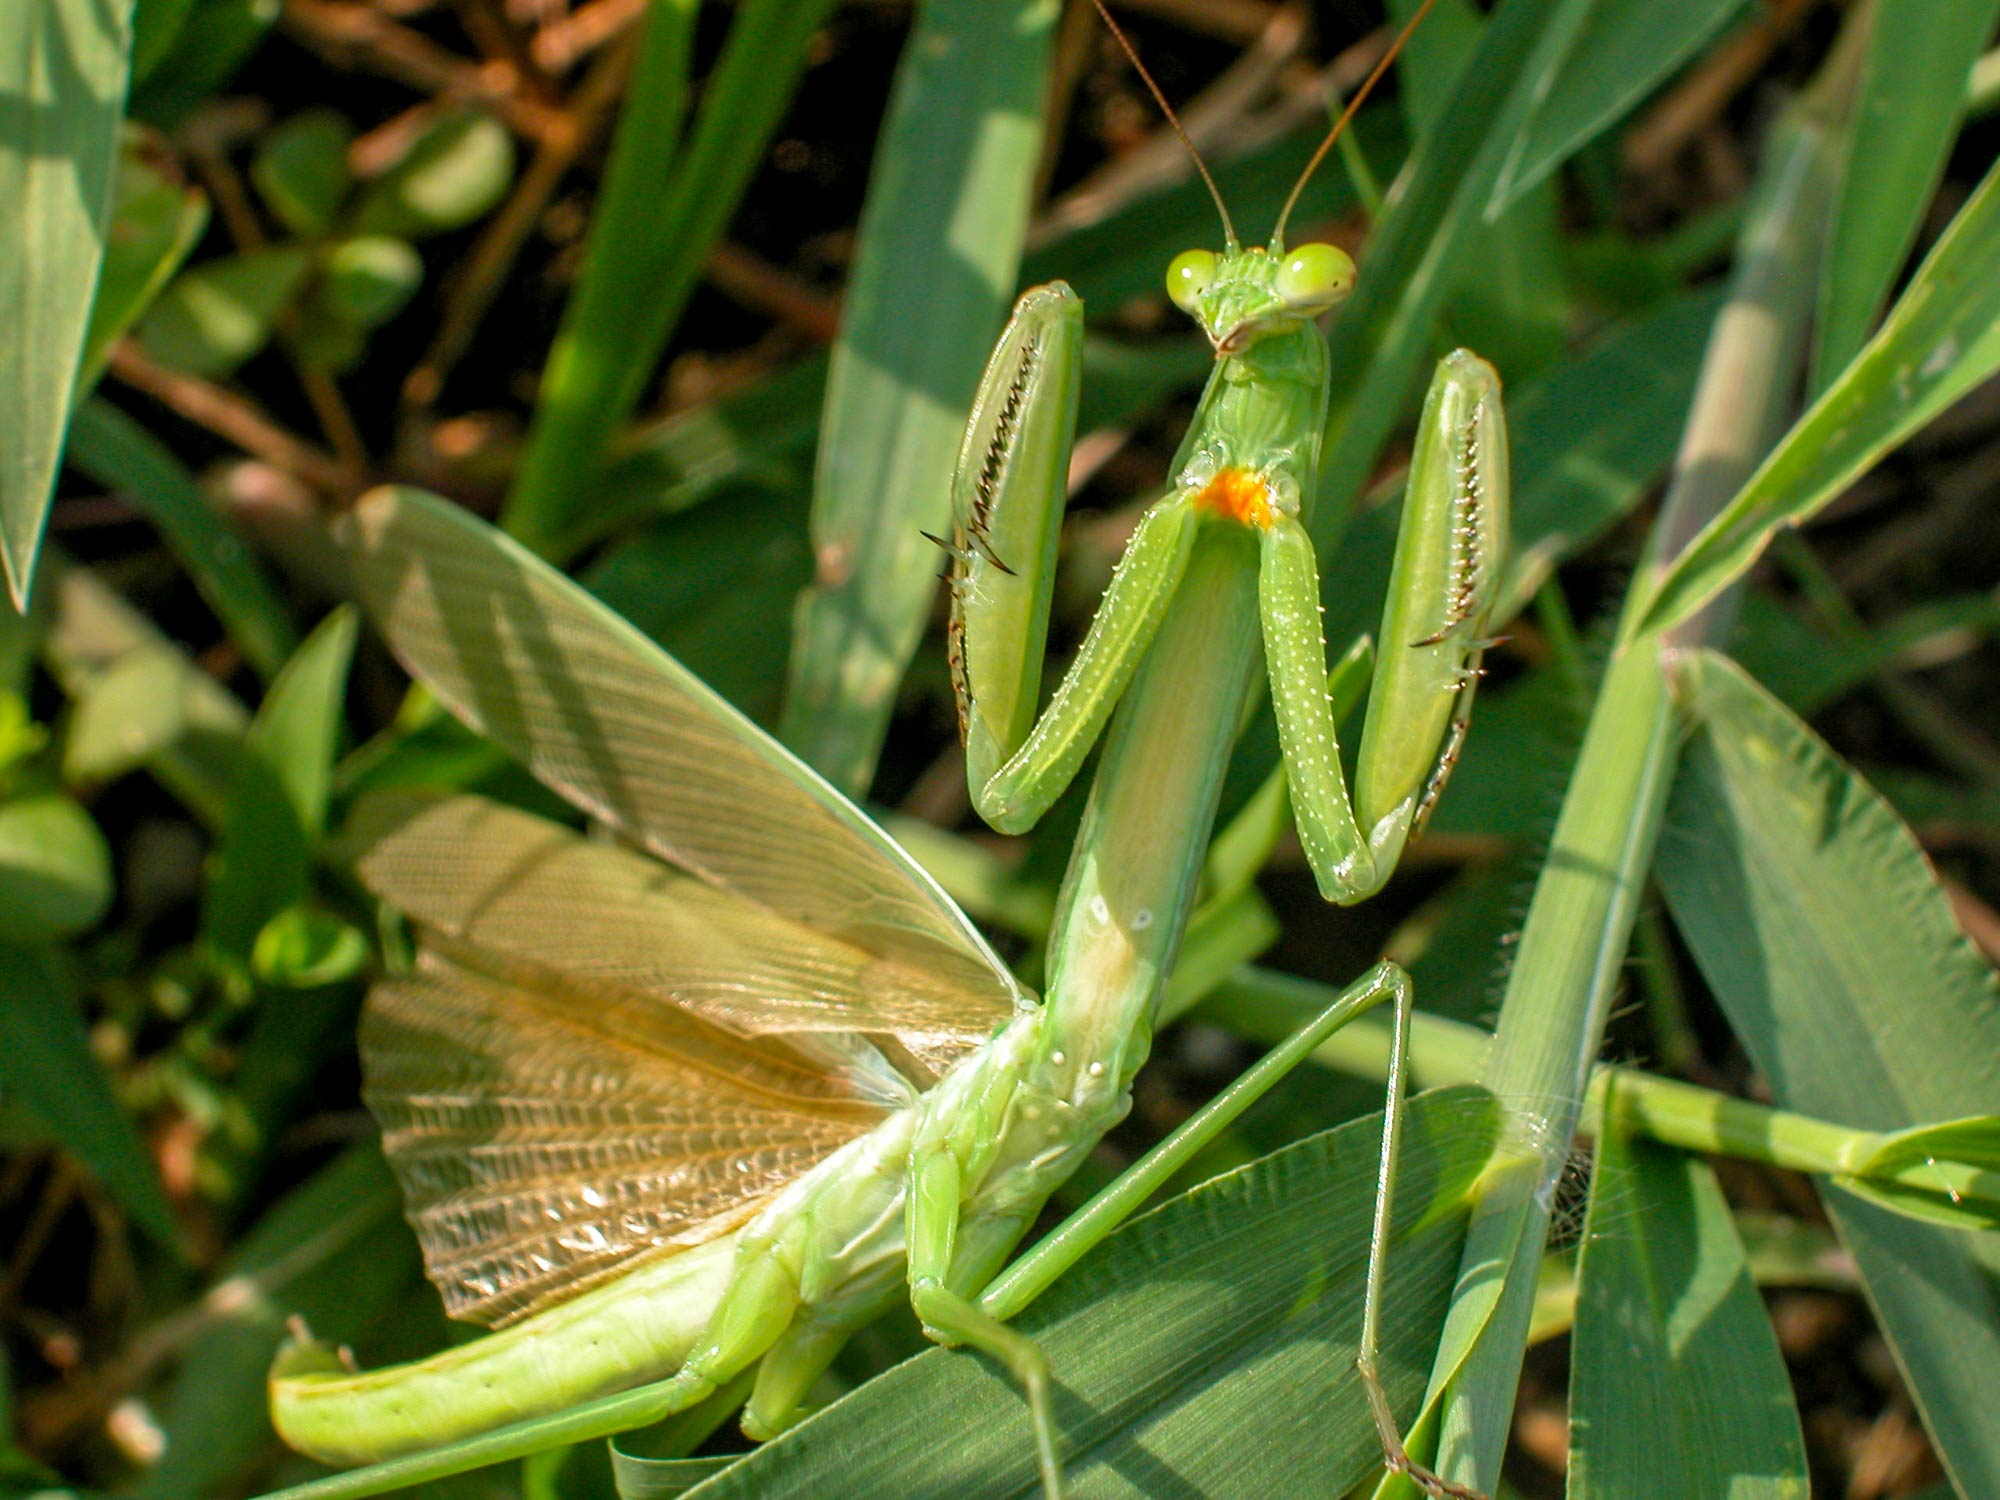 カマキリ チョウセンカマキリ の見分け方や特徴など 虫の写真と生態なら昆虫写真図鑑 ムシミル